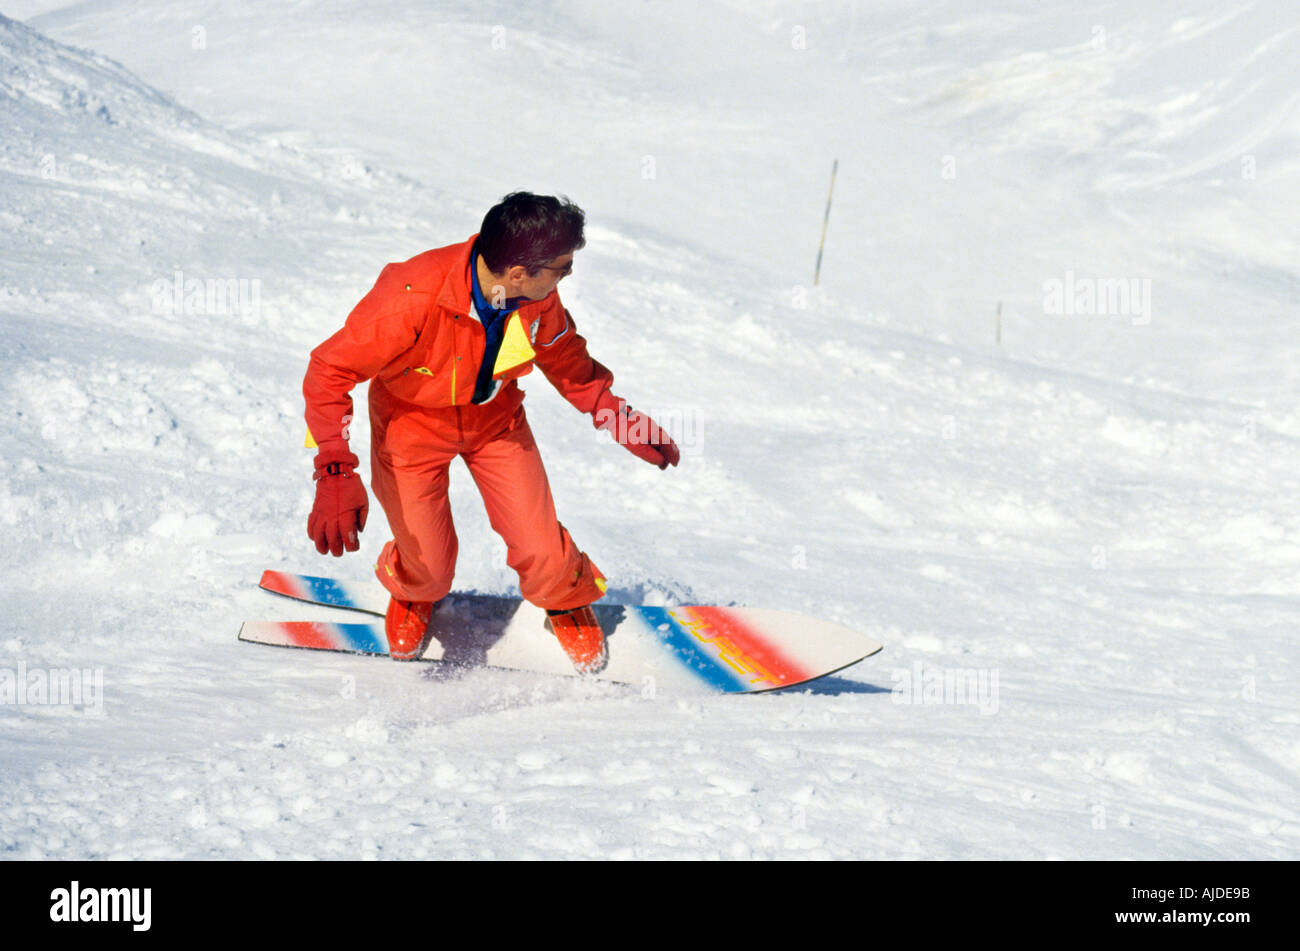 Snowboard La Plagne France Stock Photo